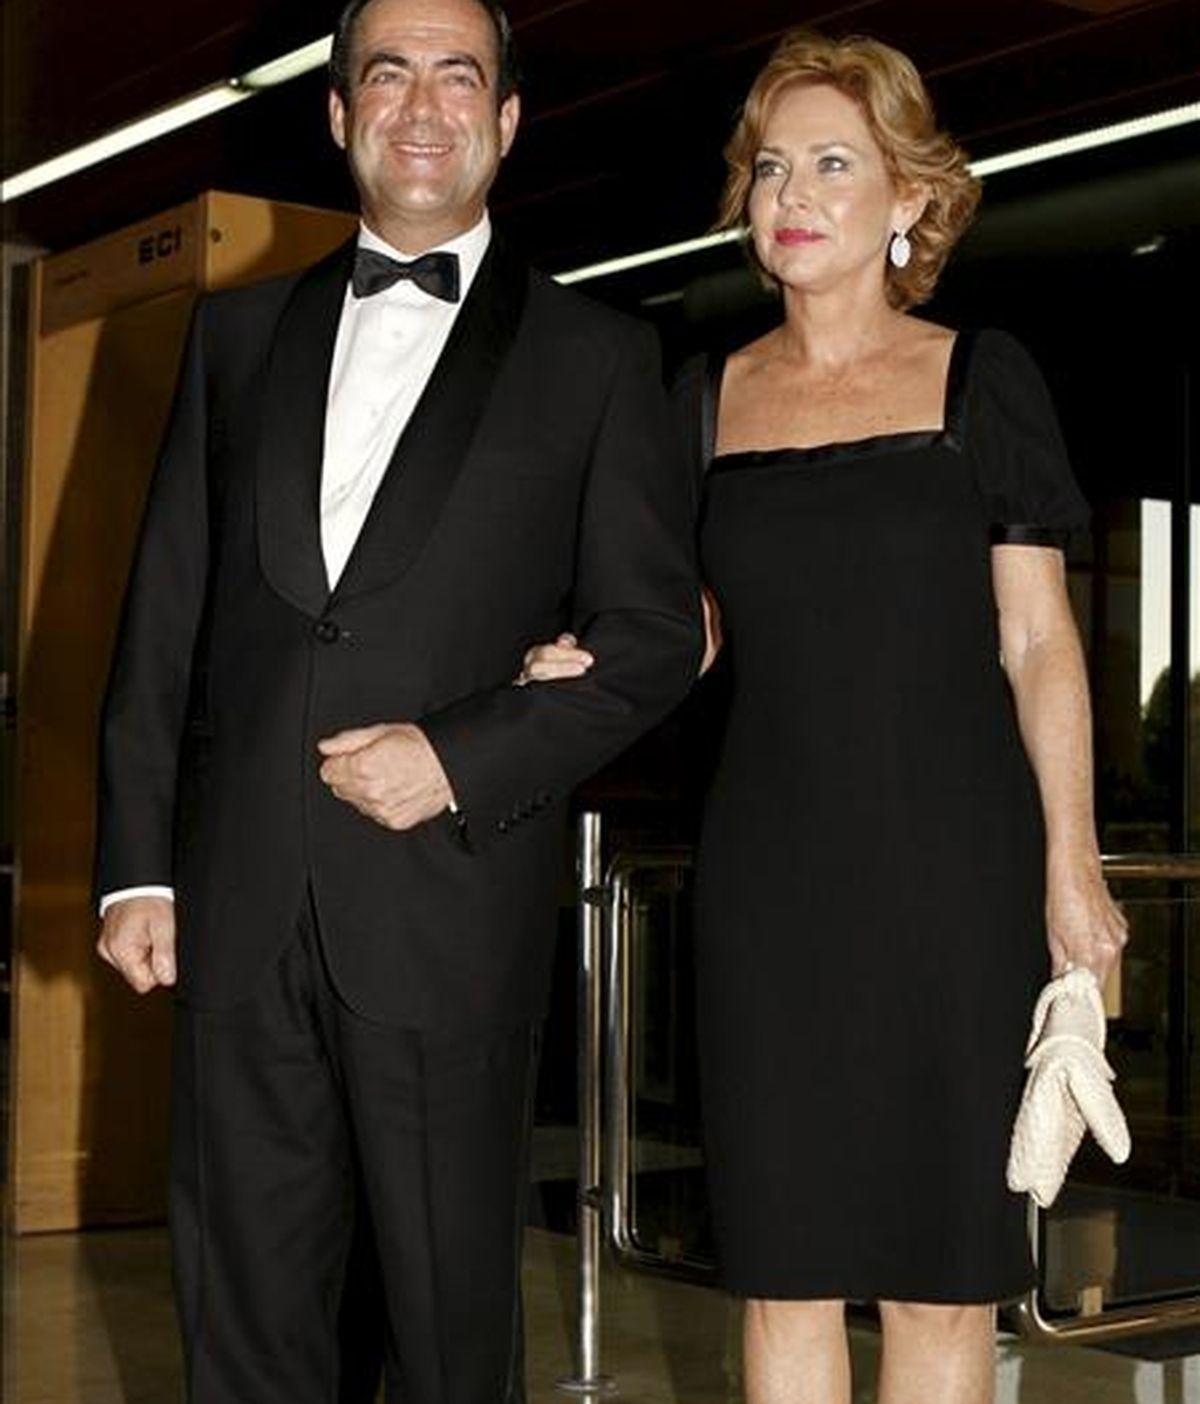 El presidente del Congreso de los Diputados, José Bono, y su esposa Ana Rodríguez Mosquera, que han decidido separarse de mutuo acuerdo. EFE/Archivo